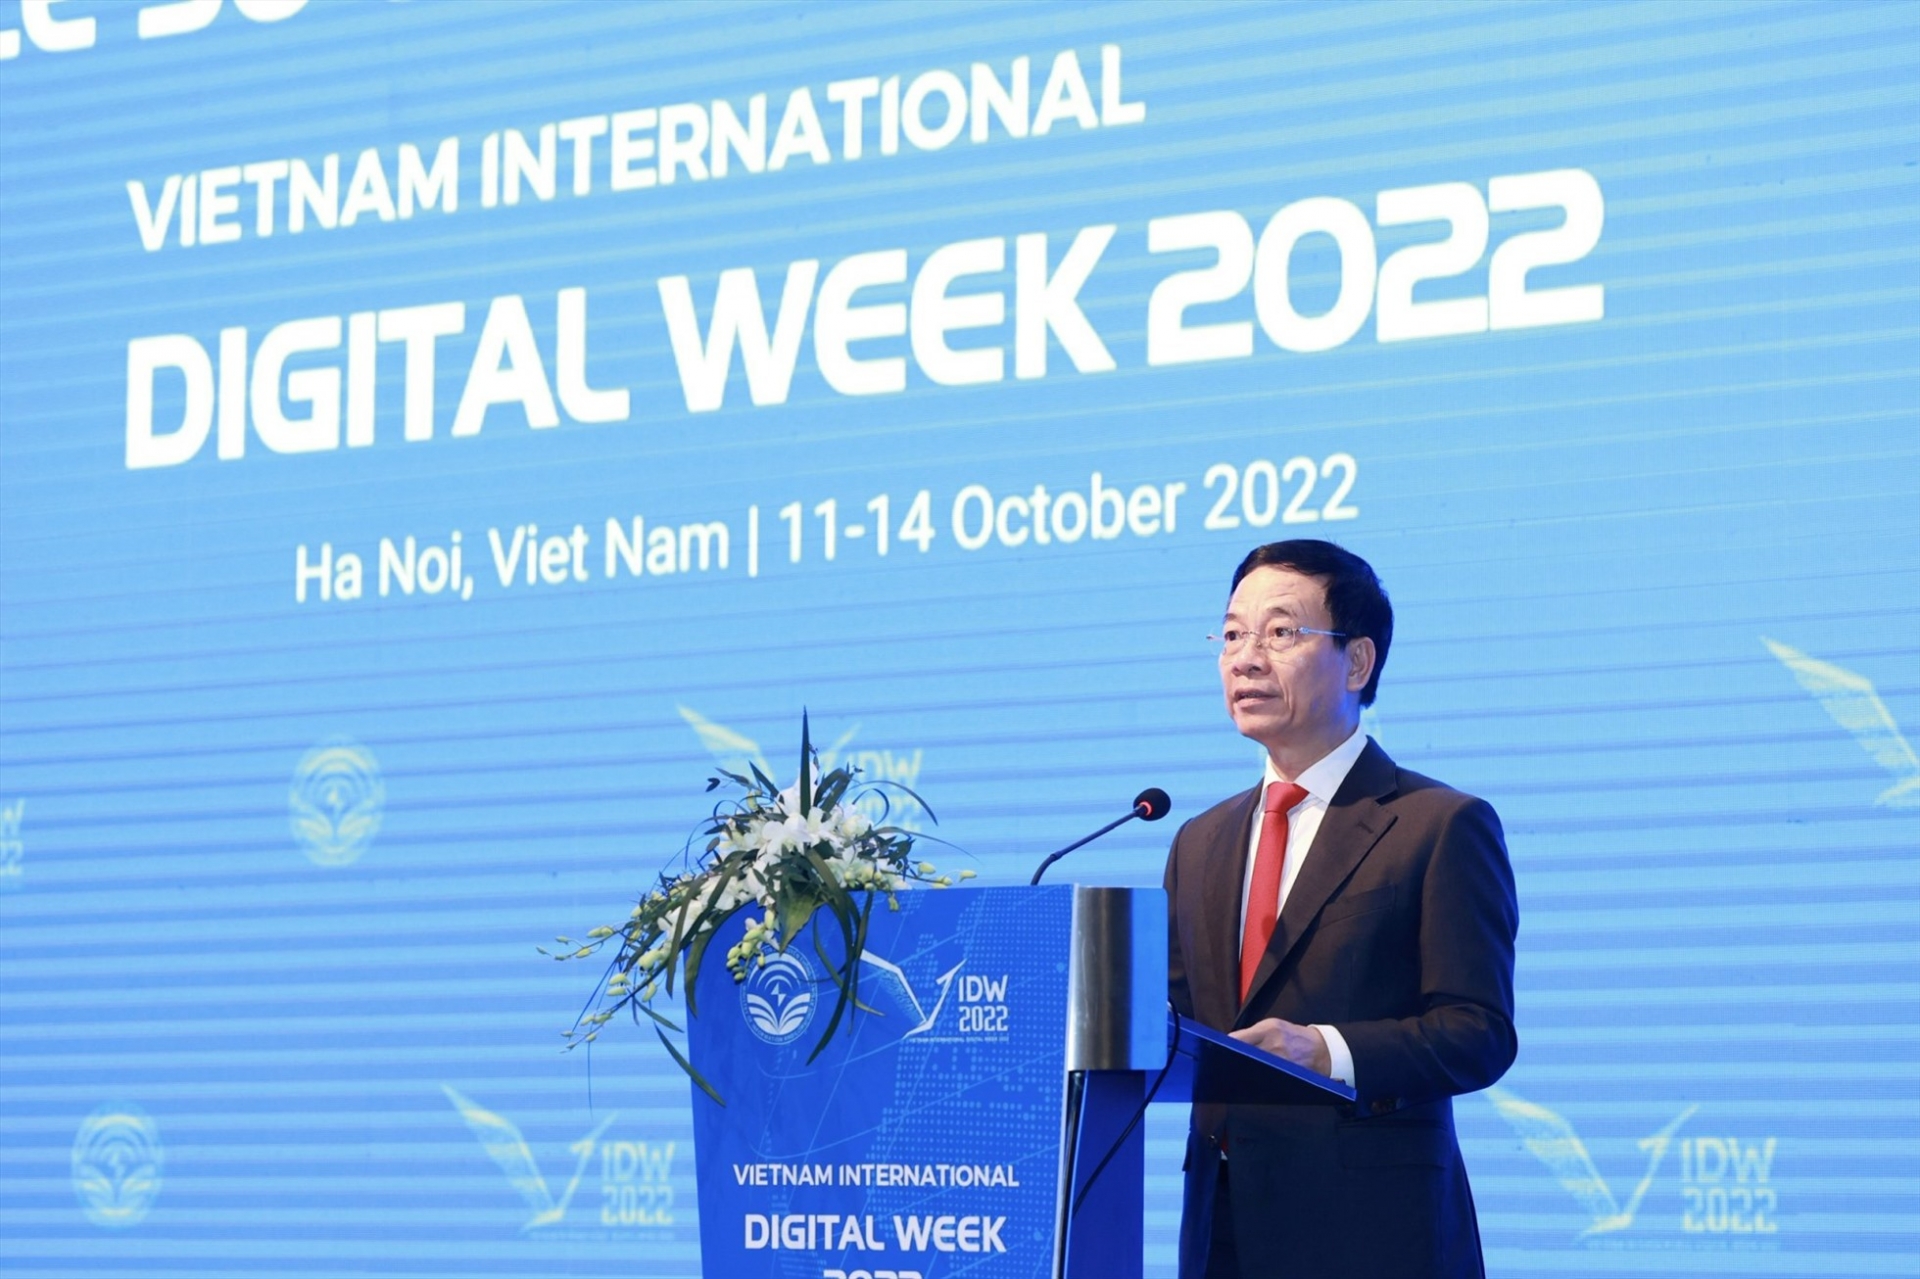 越南通信与传媒部部长阮孟雄在2022 年越南国际数字周开幕式上致词。图自thanhnien.vn